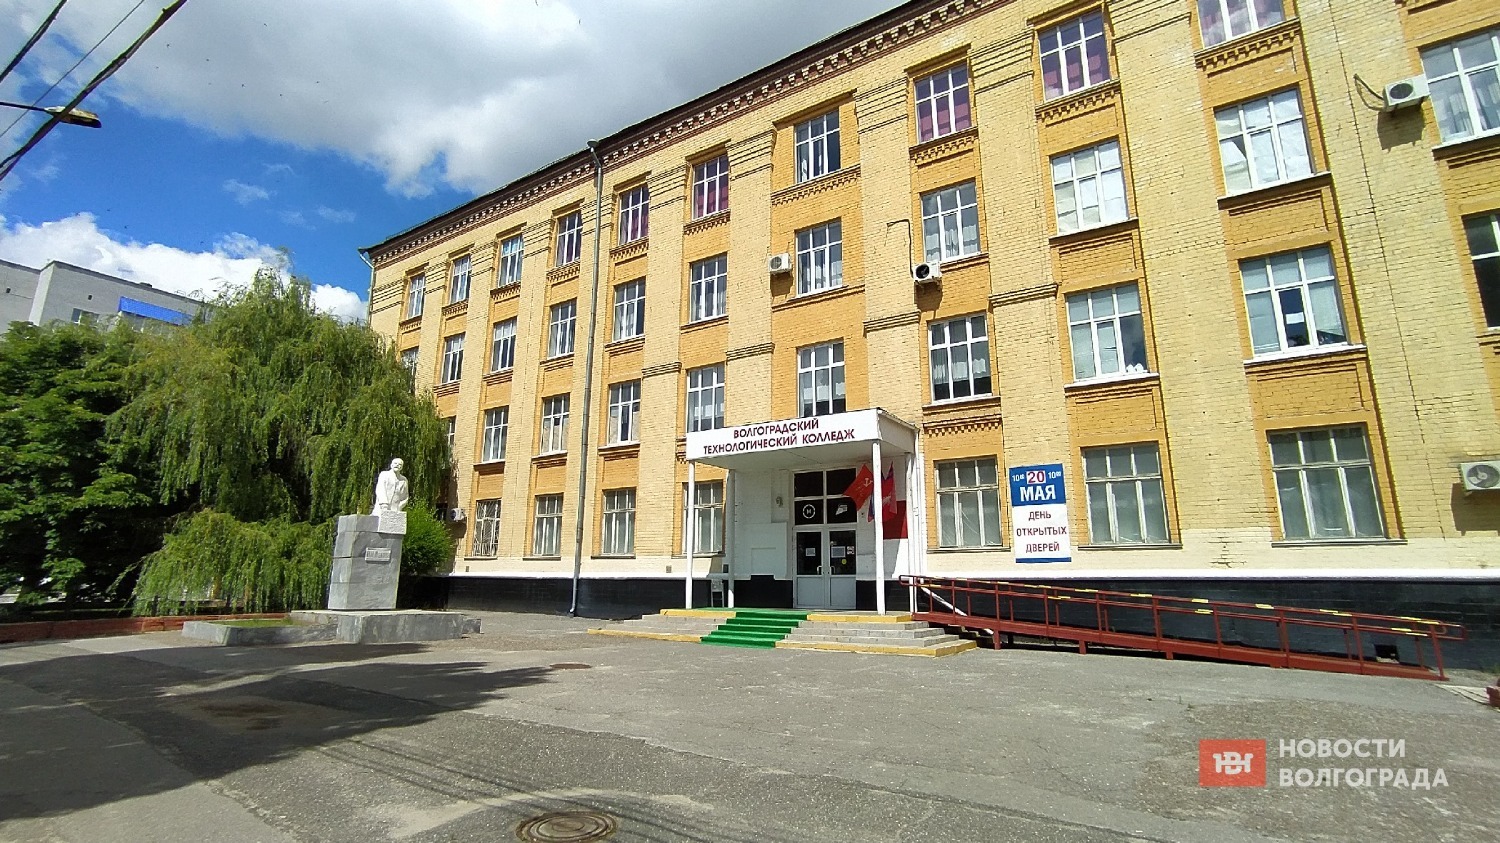 Технологический колледж в Дзержинском районе Волгограда